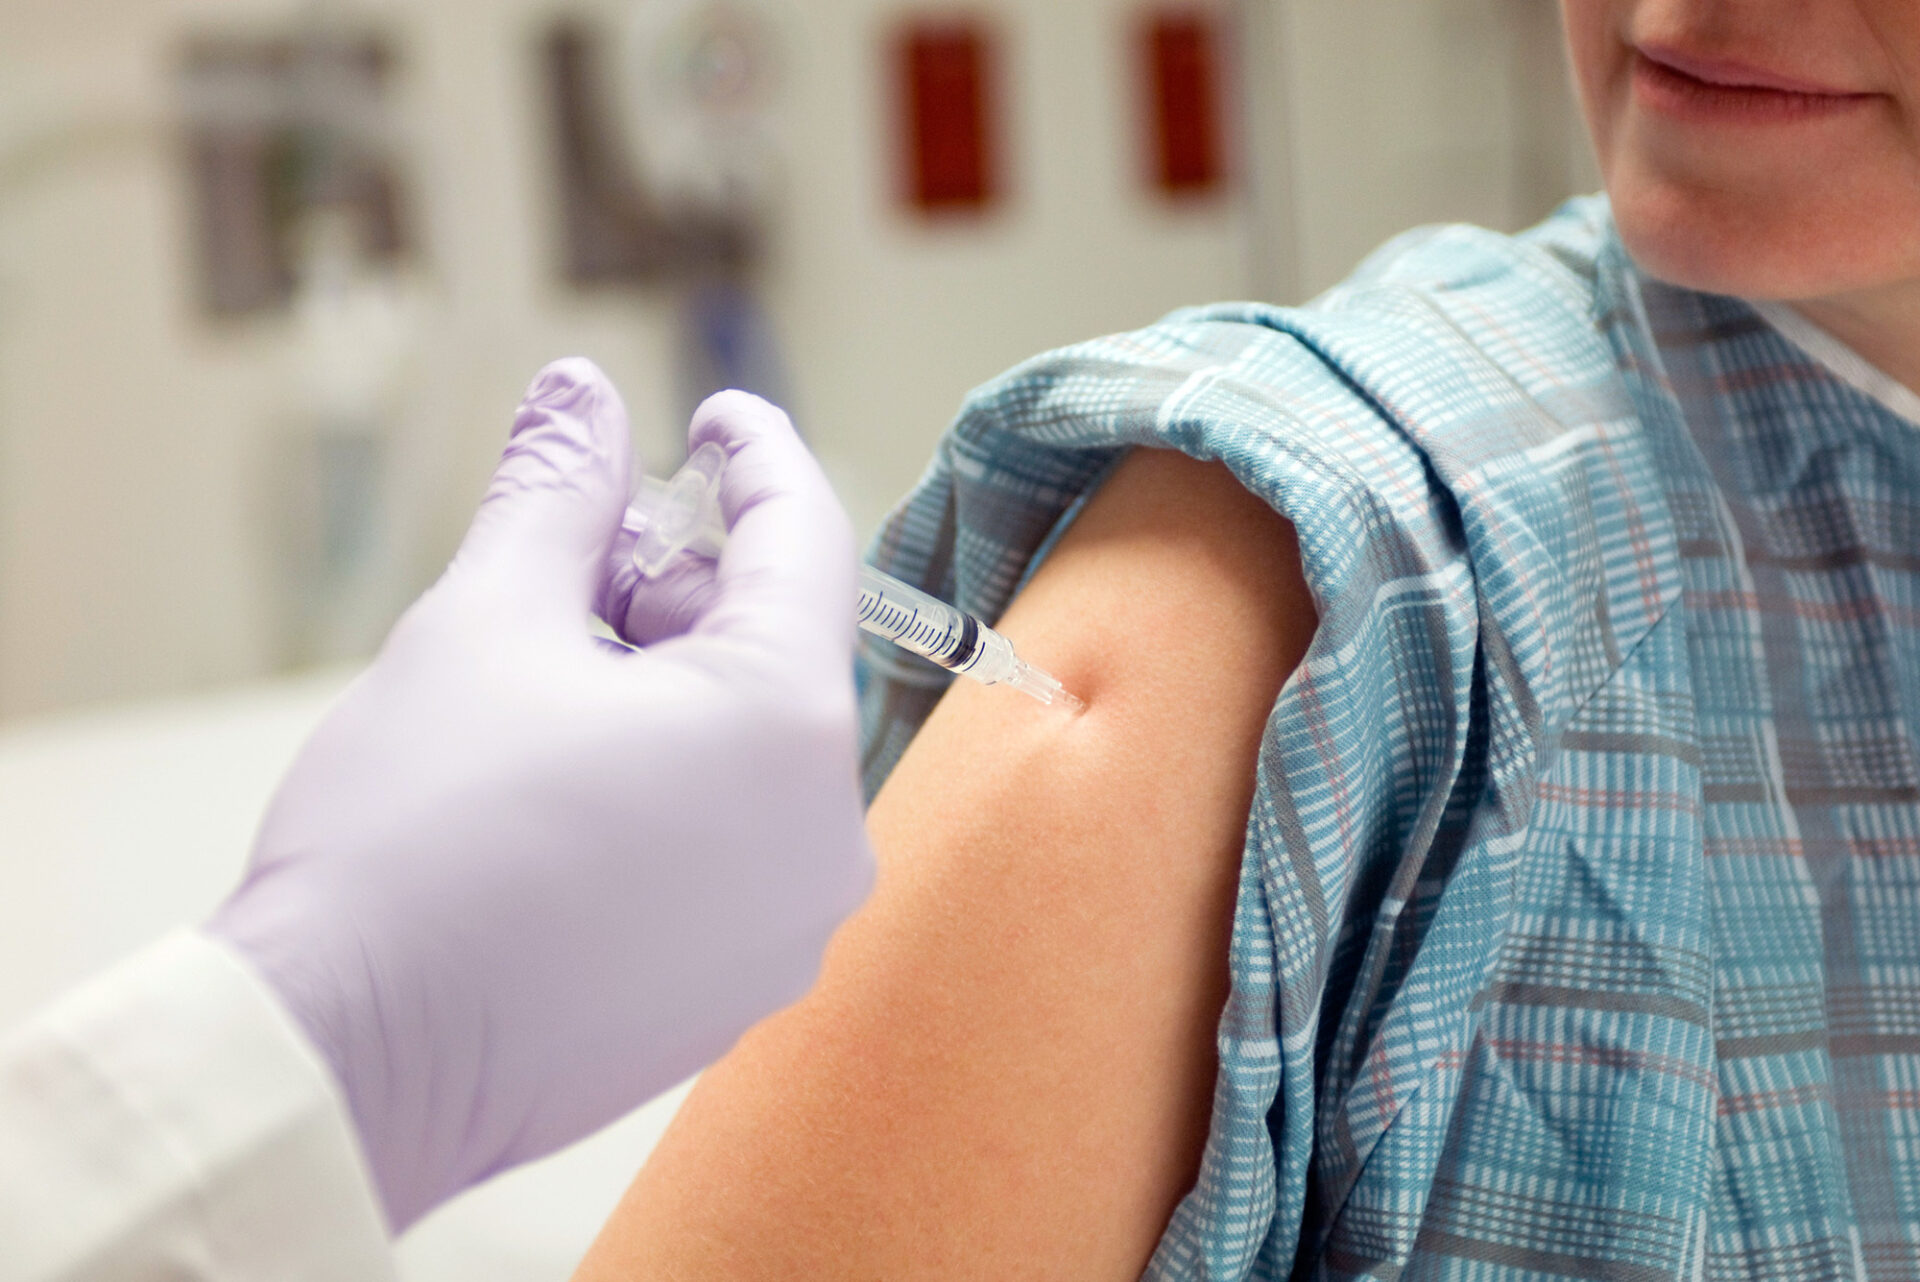 Commissioner Carper Calls For Vaccine Bill Veto